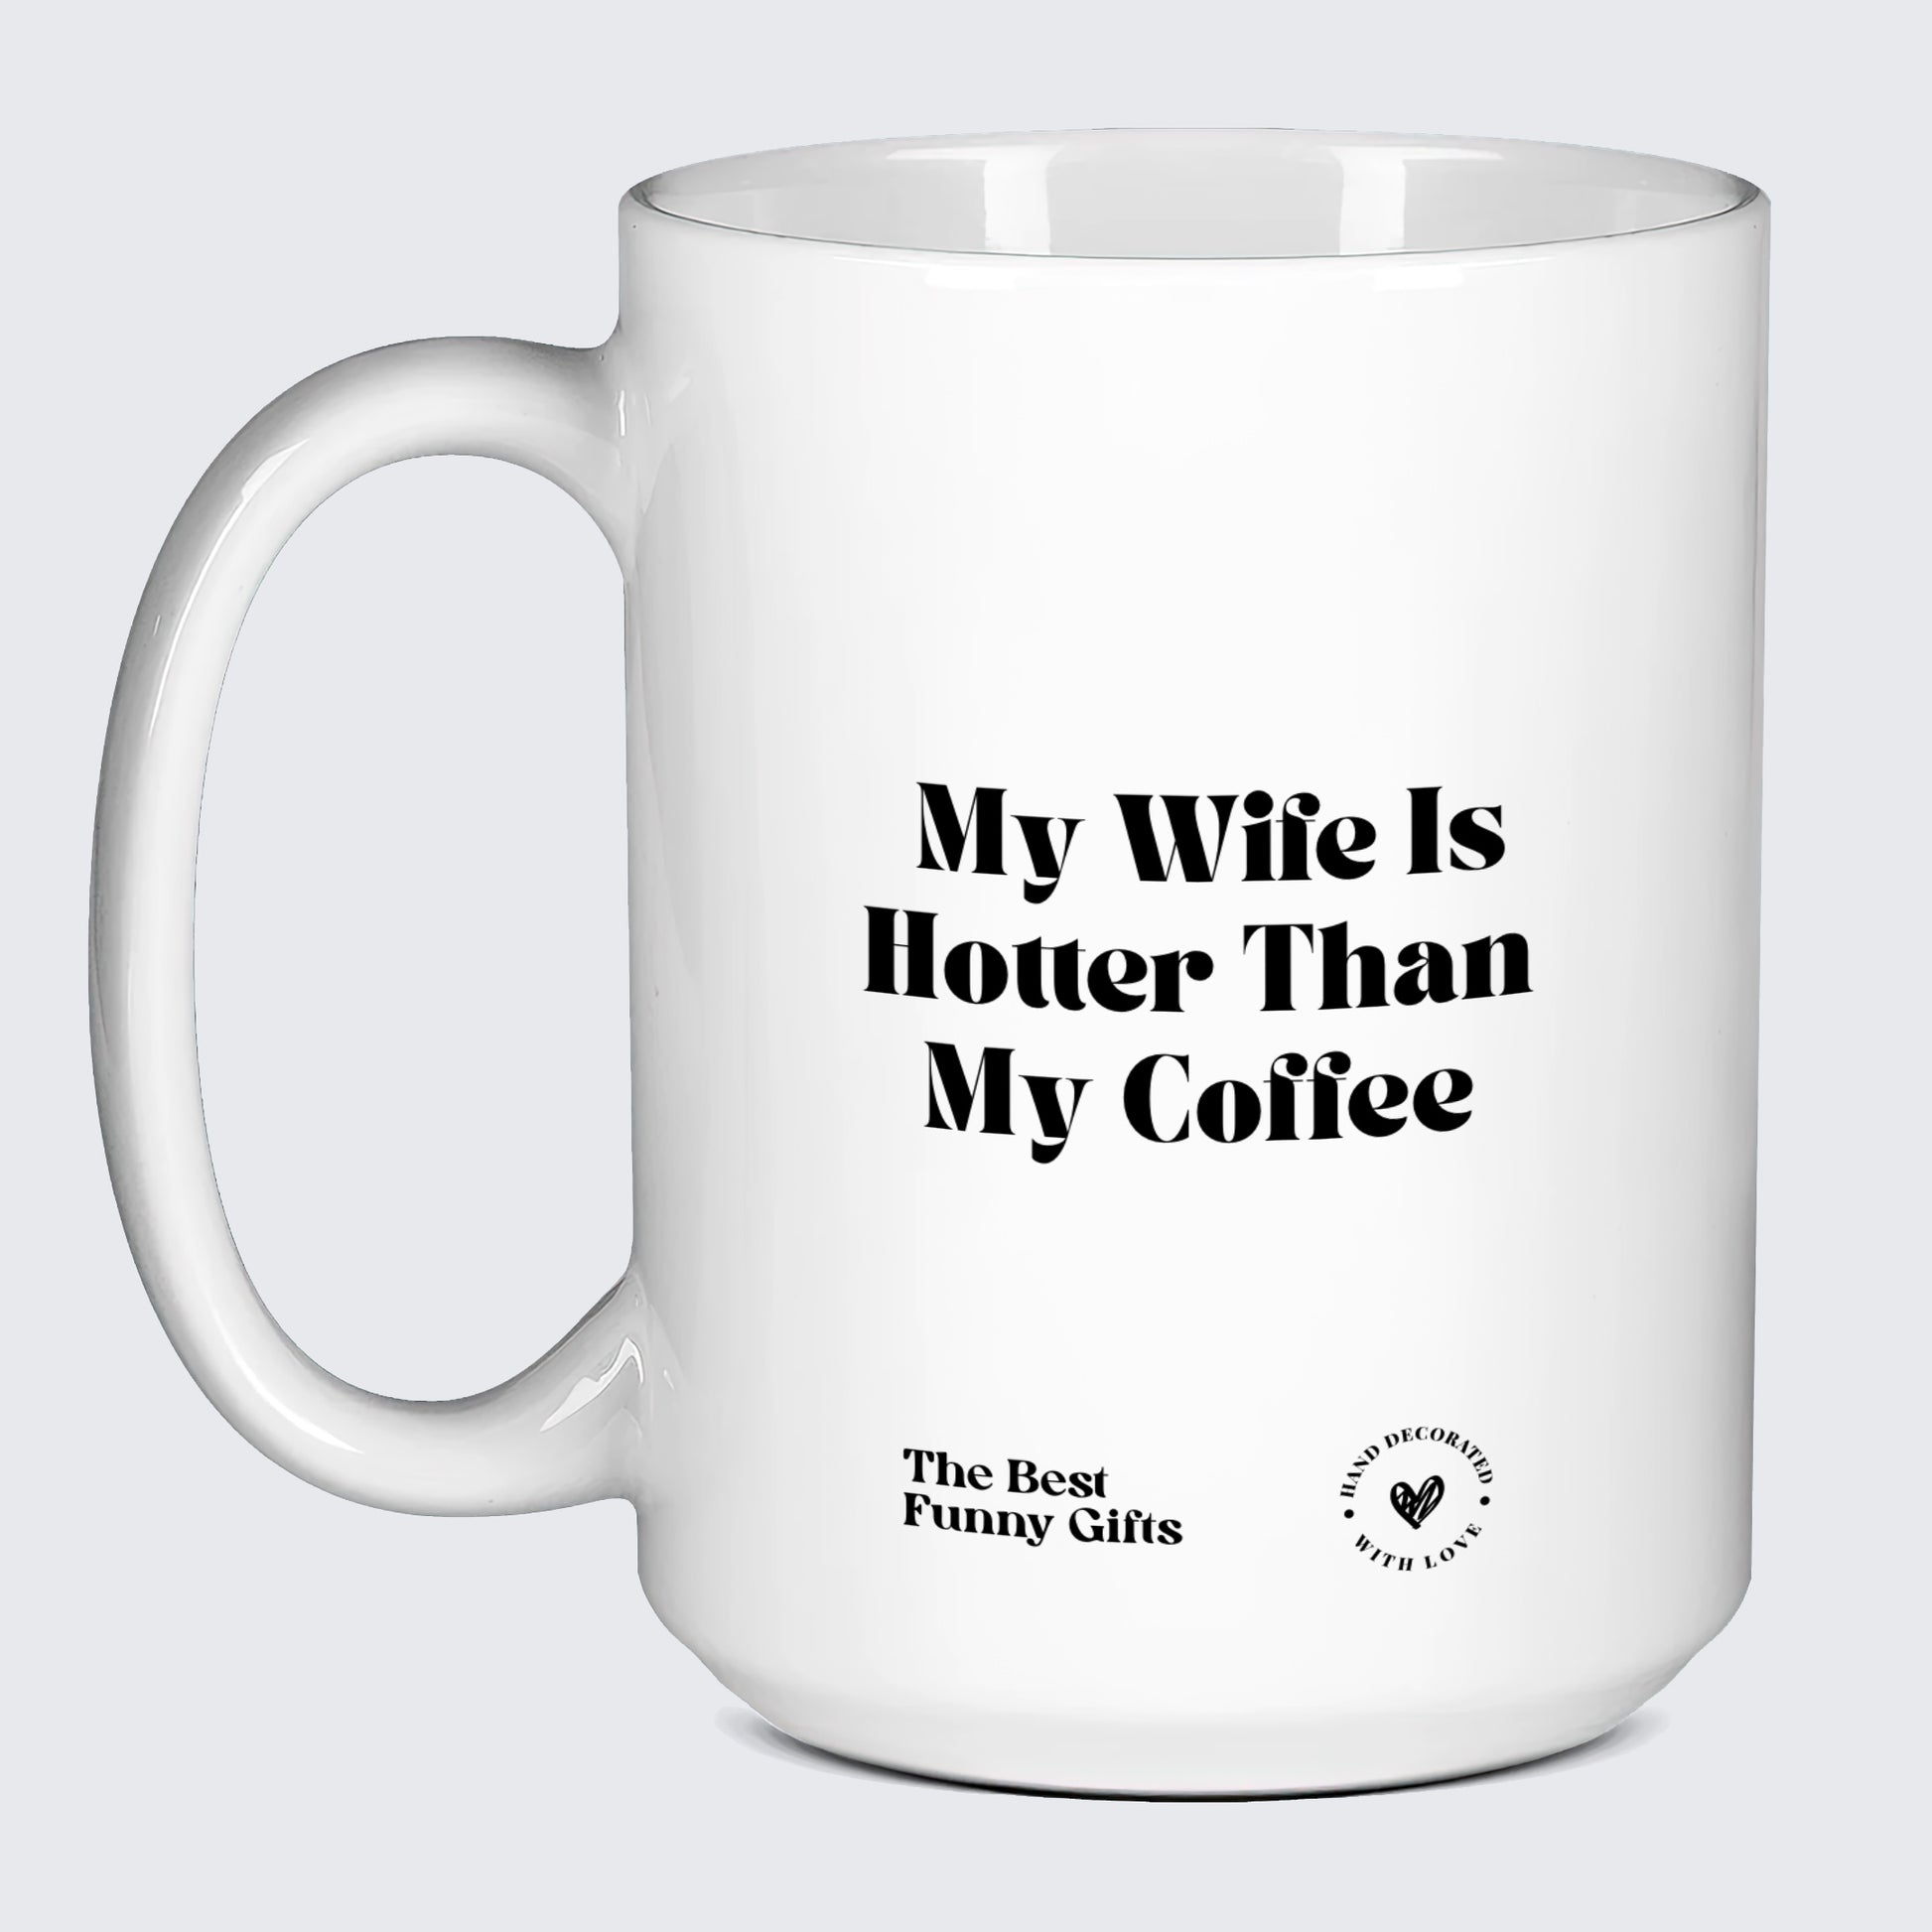 Funny Mugs - My Wife is Hotter Than My Coffee - Coffee Mug